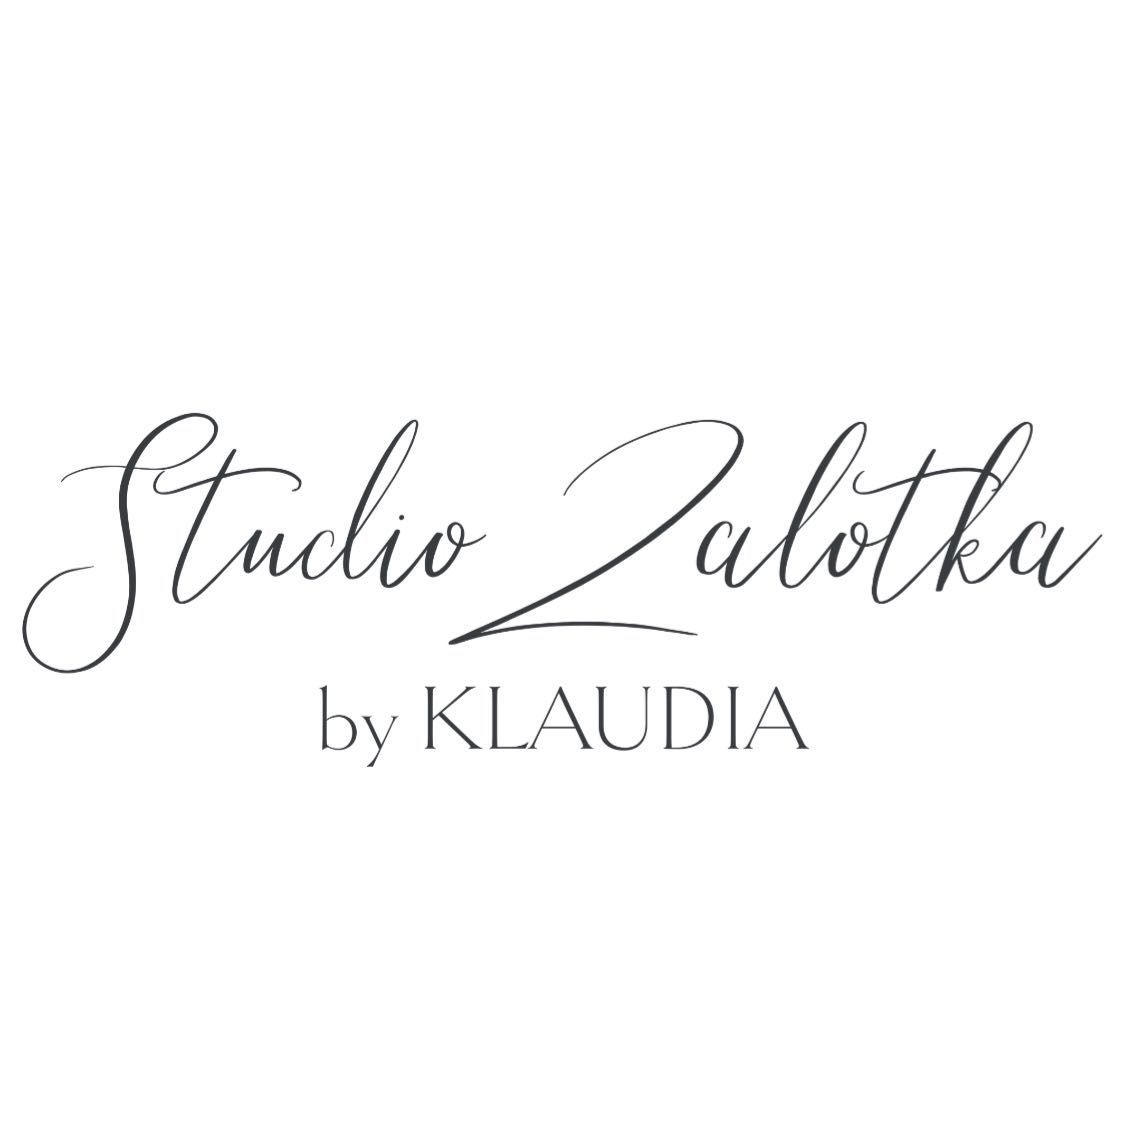 Studio Zalotka by Klaudia, Piotra Wawrzyniaka, 3, 60-506, Poznań, Jeżyce